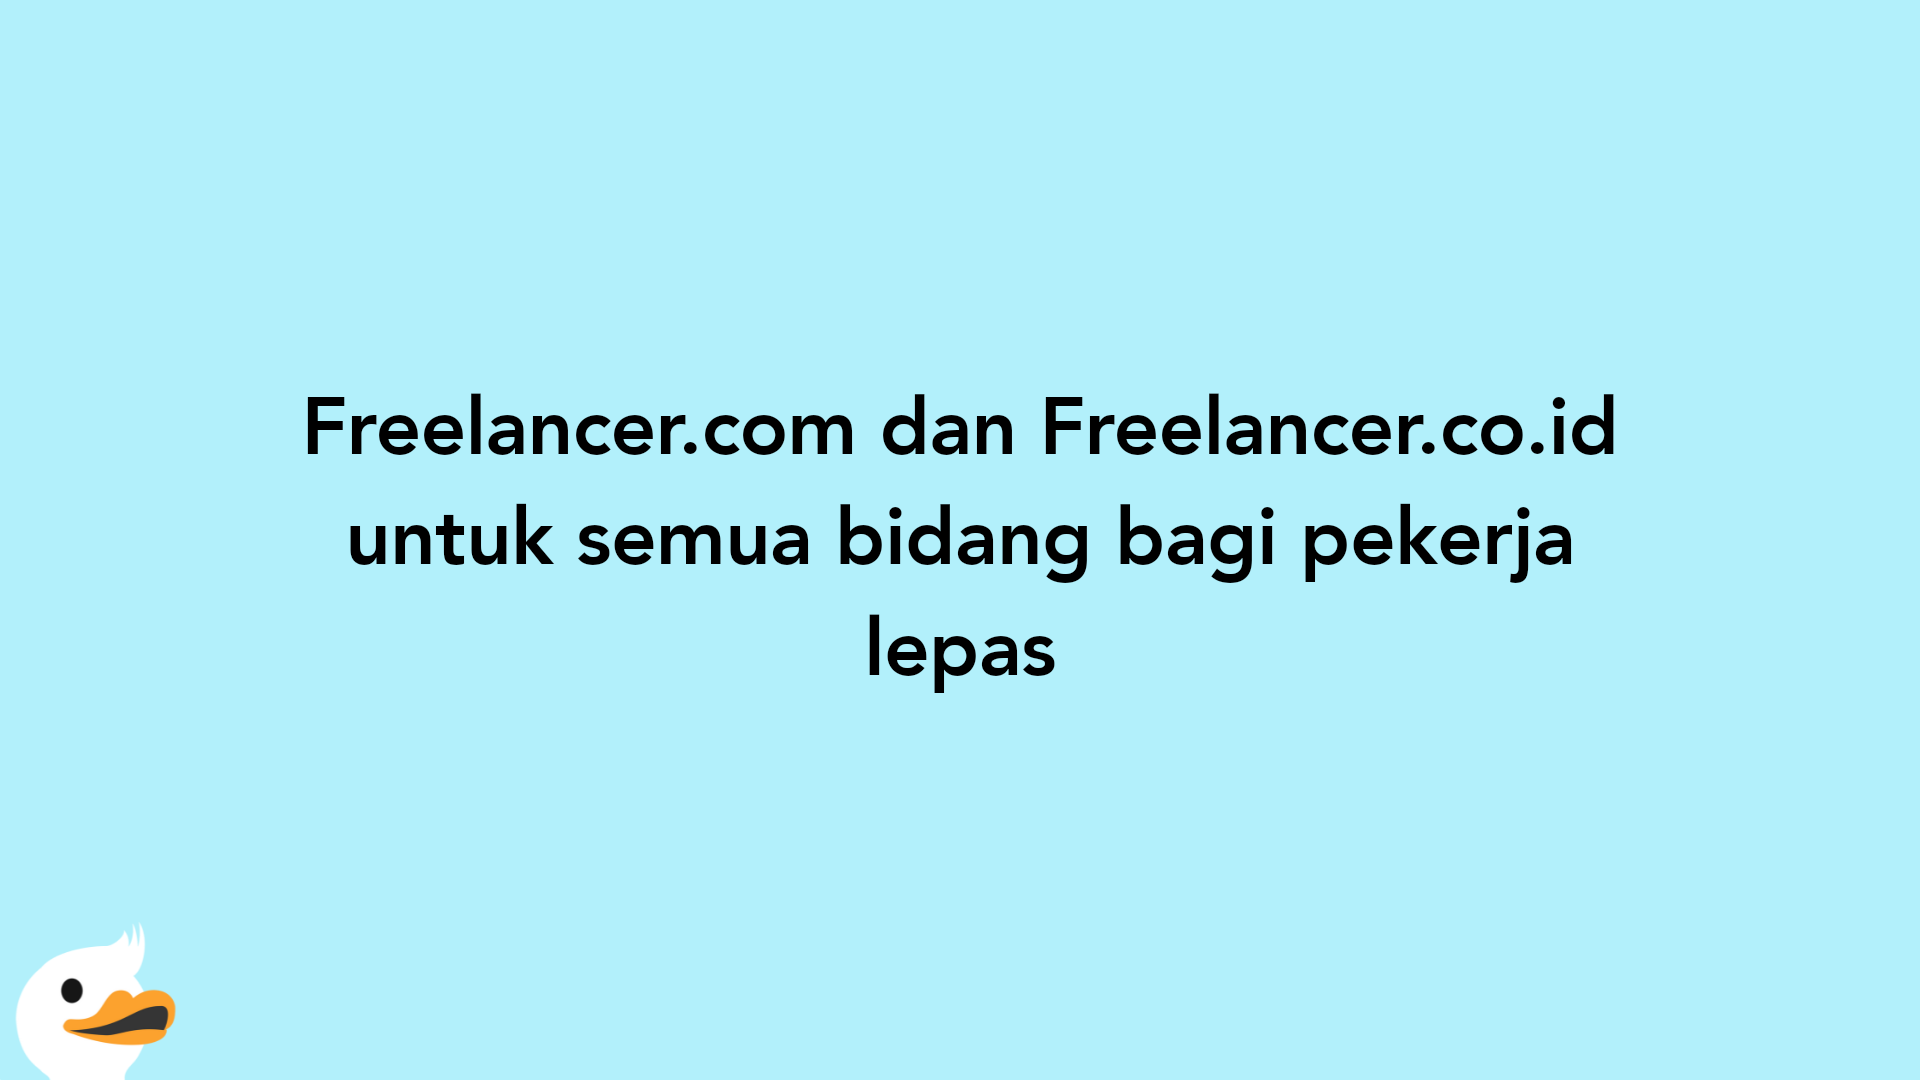 Freelancer.com dan Freelancer.co.id untuk semua bidang bagi pekerja lepas